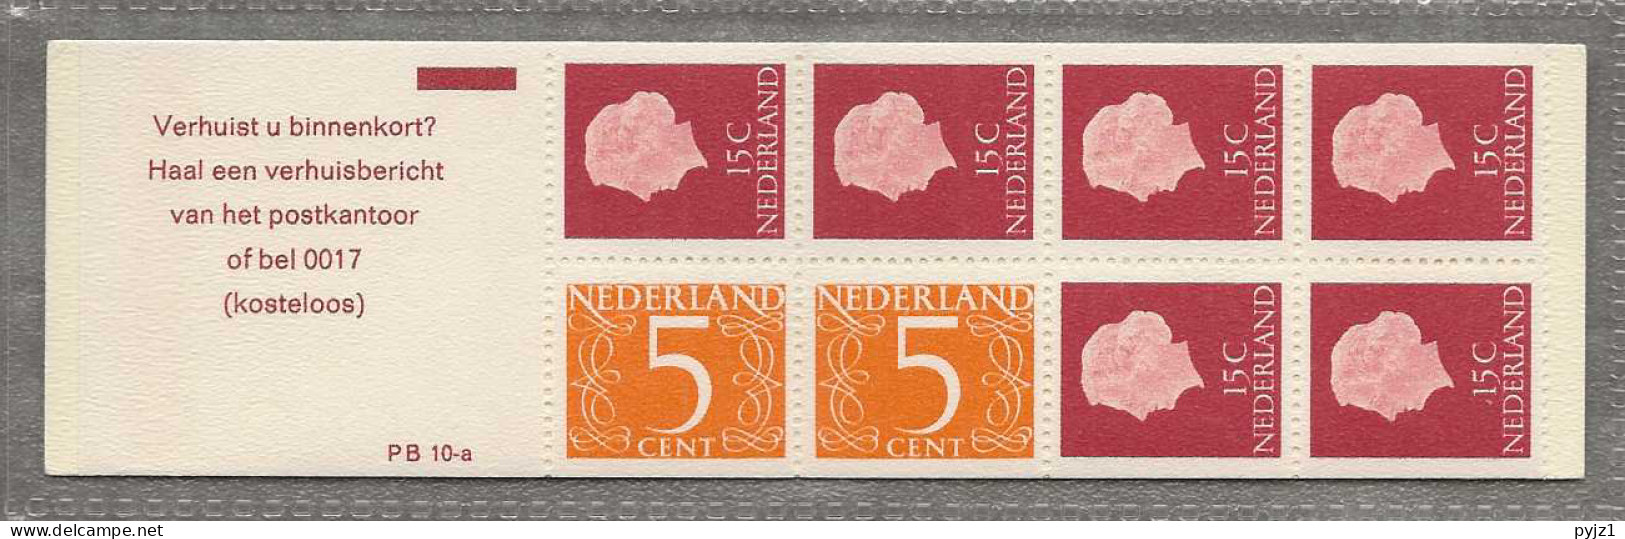 1971 MNH Nederland NVPH PB 10aF - Markenheftchen Und Rollen